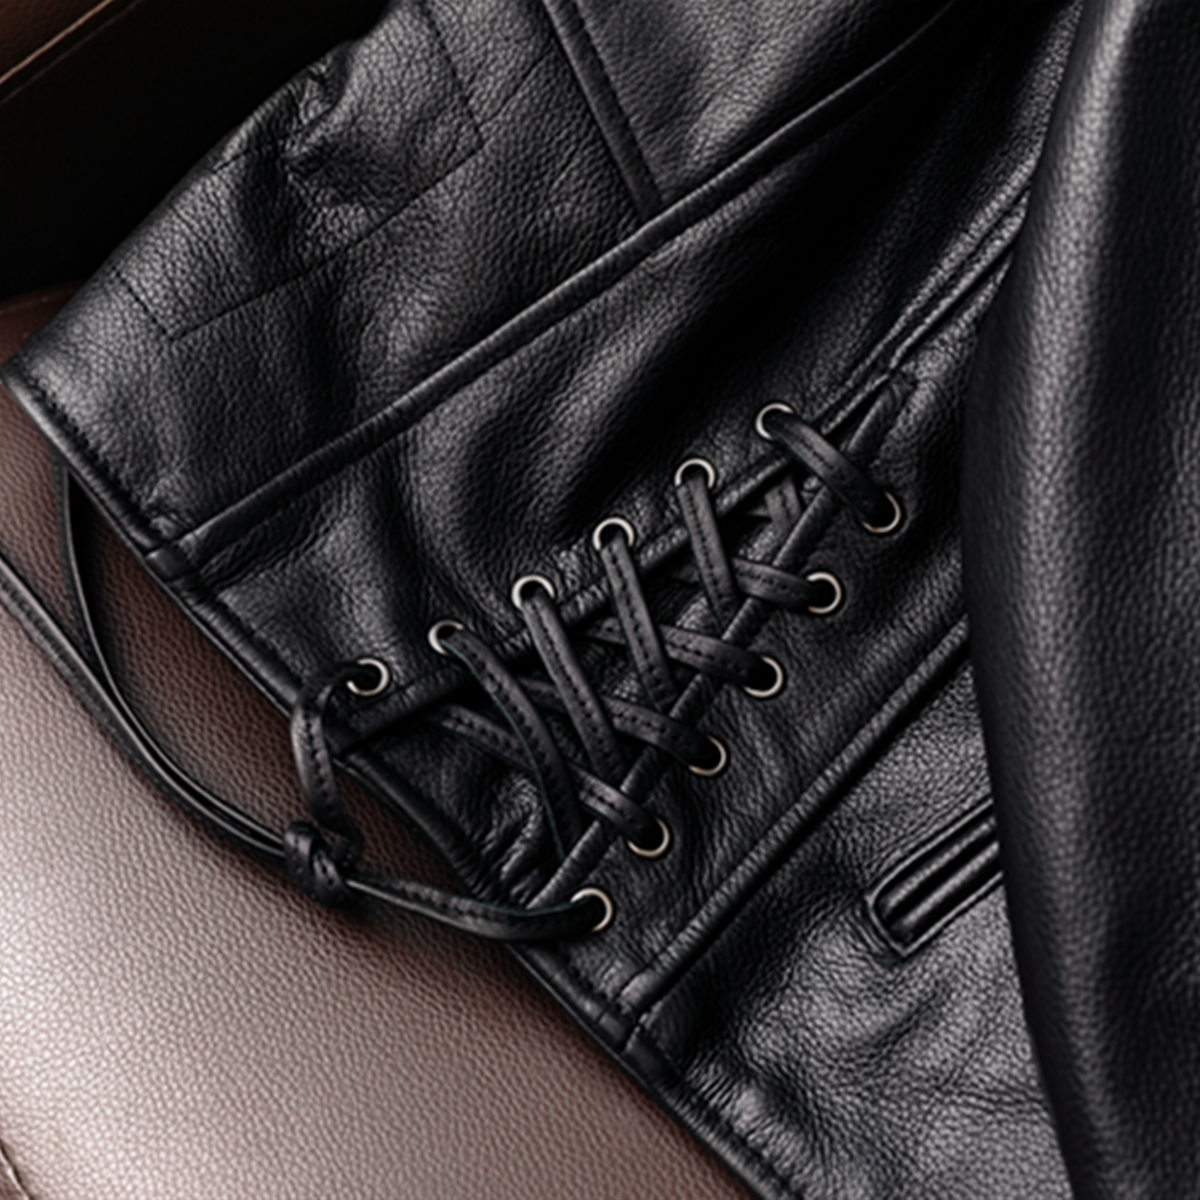 Large Lapel Plaid Back Genuine Leather Jacket